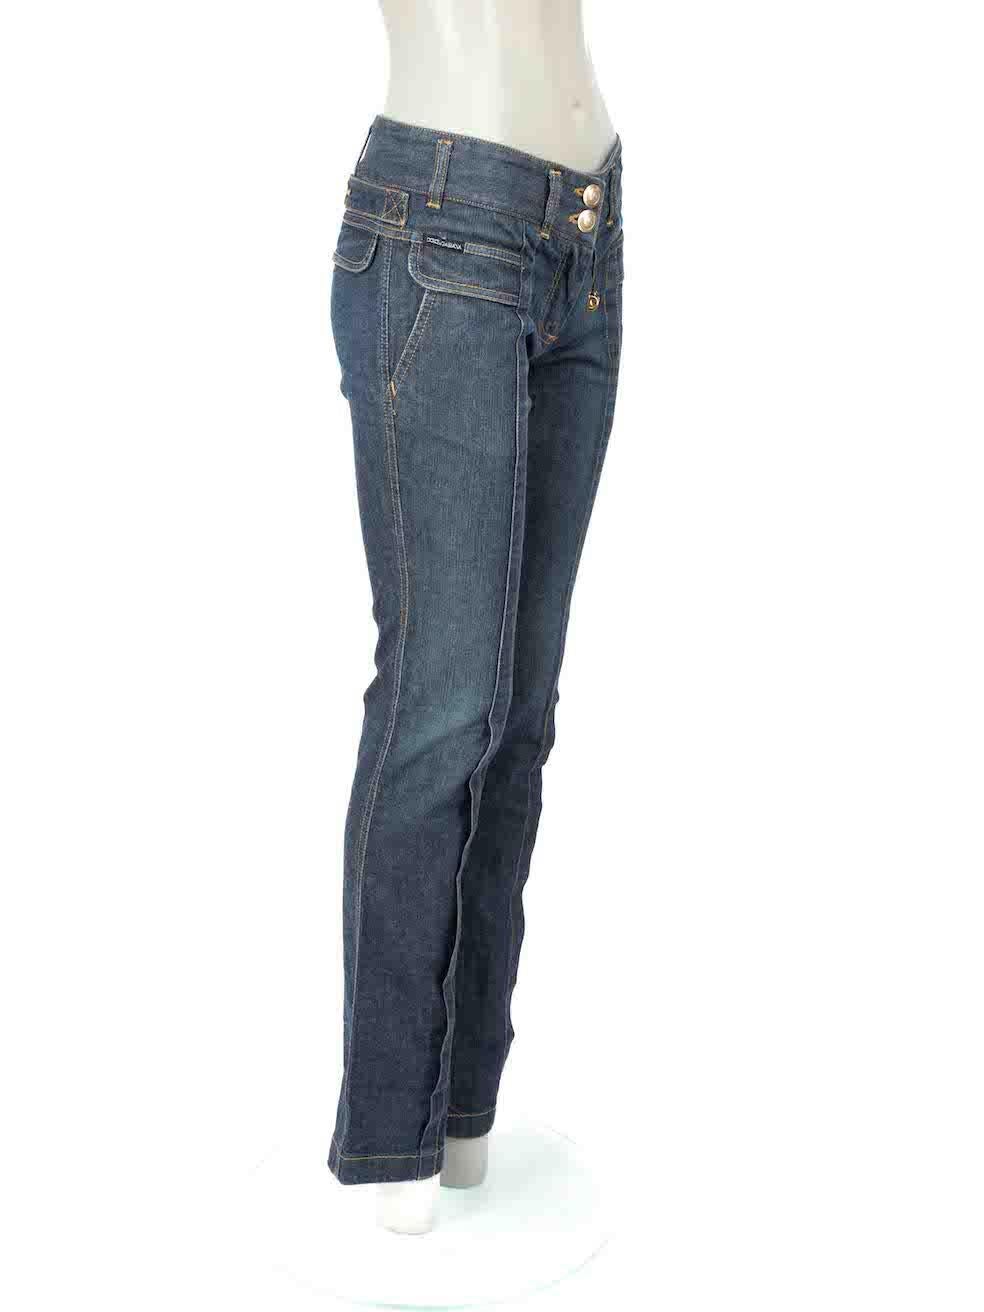 L'ÉTAT est très bon. L'usure minimale du jean est évidente. Décoloration minime à la ceinture du jean et à la quincaillerie du bouton sur cet article de revente de designer Dolce & Gabbana.

Détails
Bleu
Coton
Jeans
Coupe skinny
Taille moyenne
2